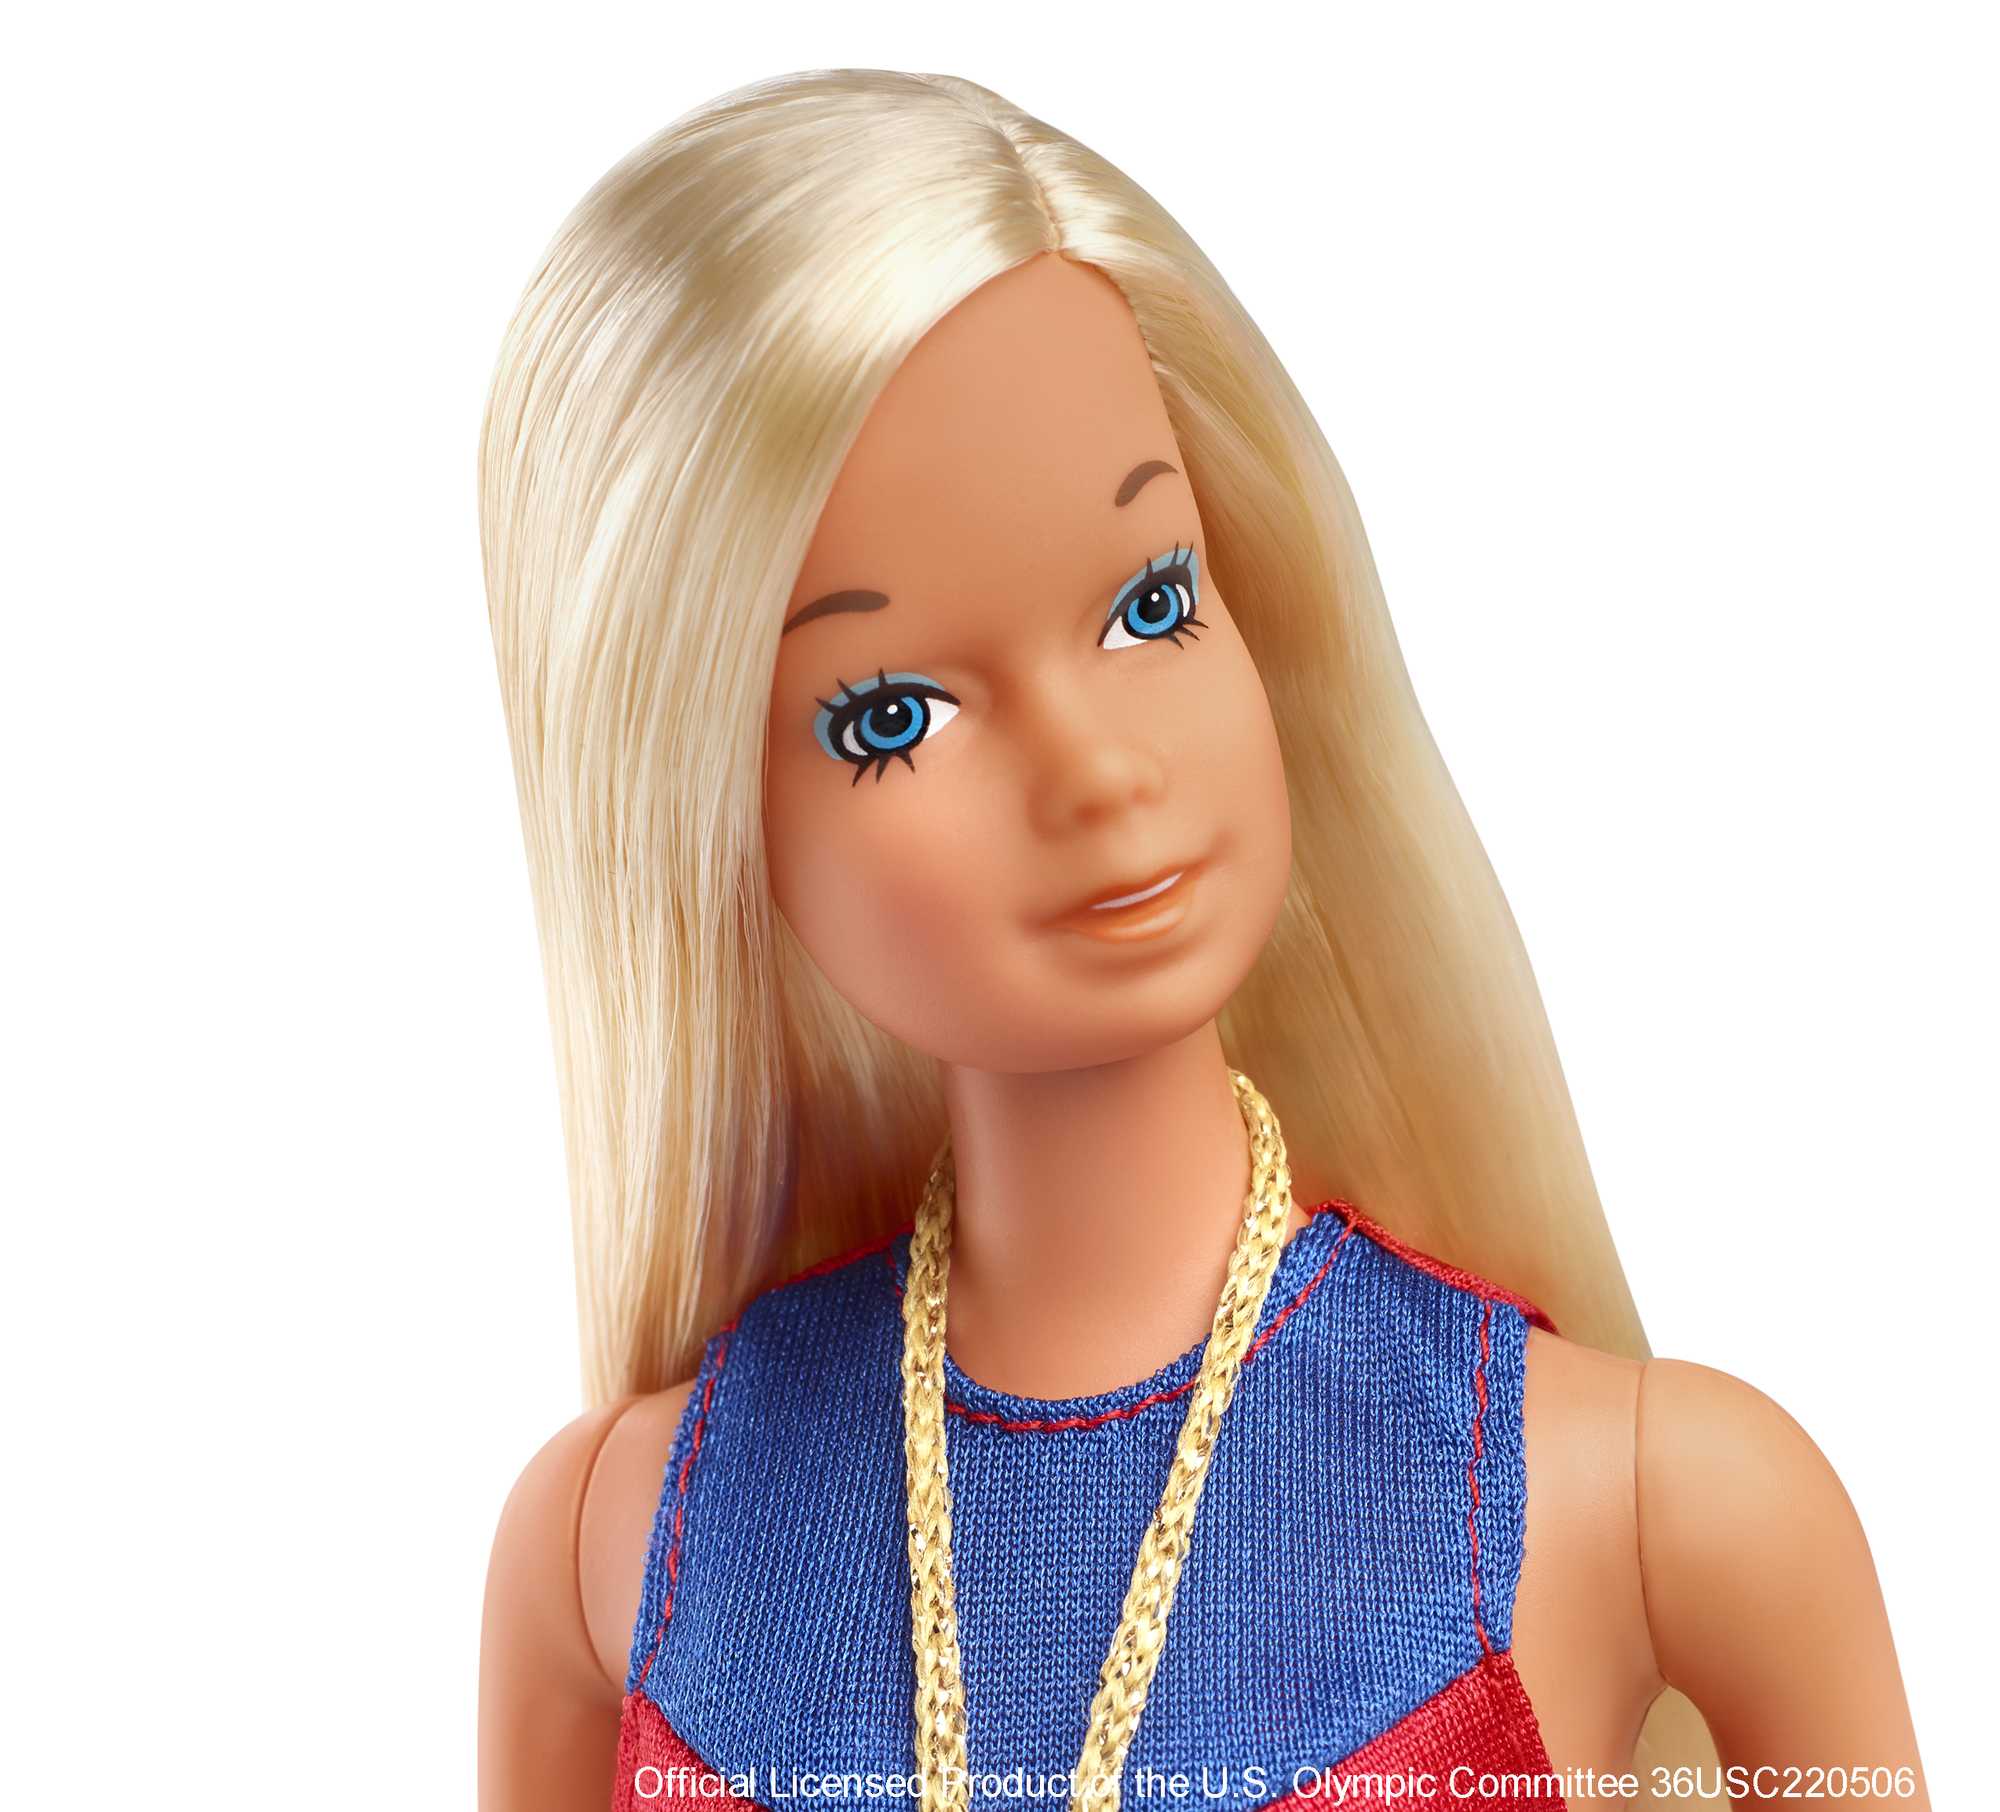 Barbie Gold Medal Barbie Doll | Mattel